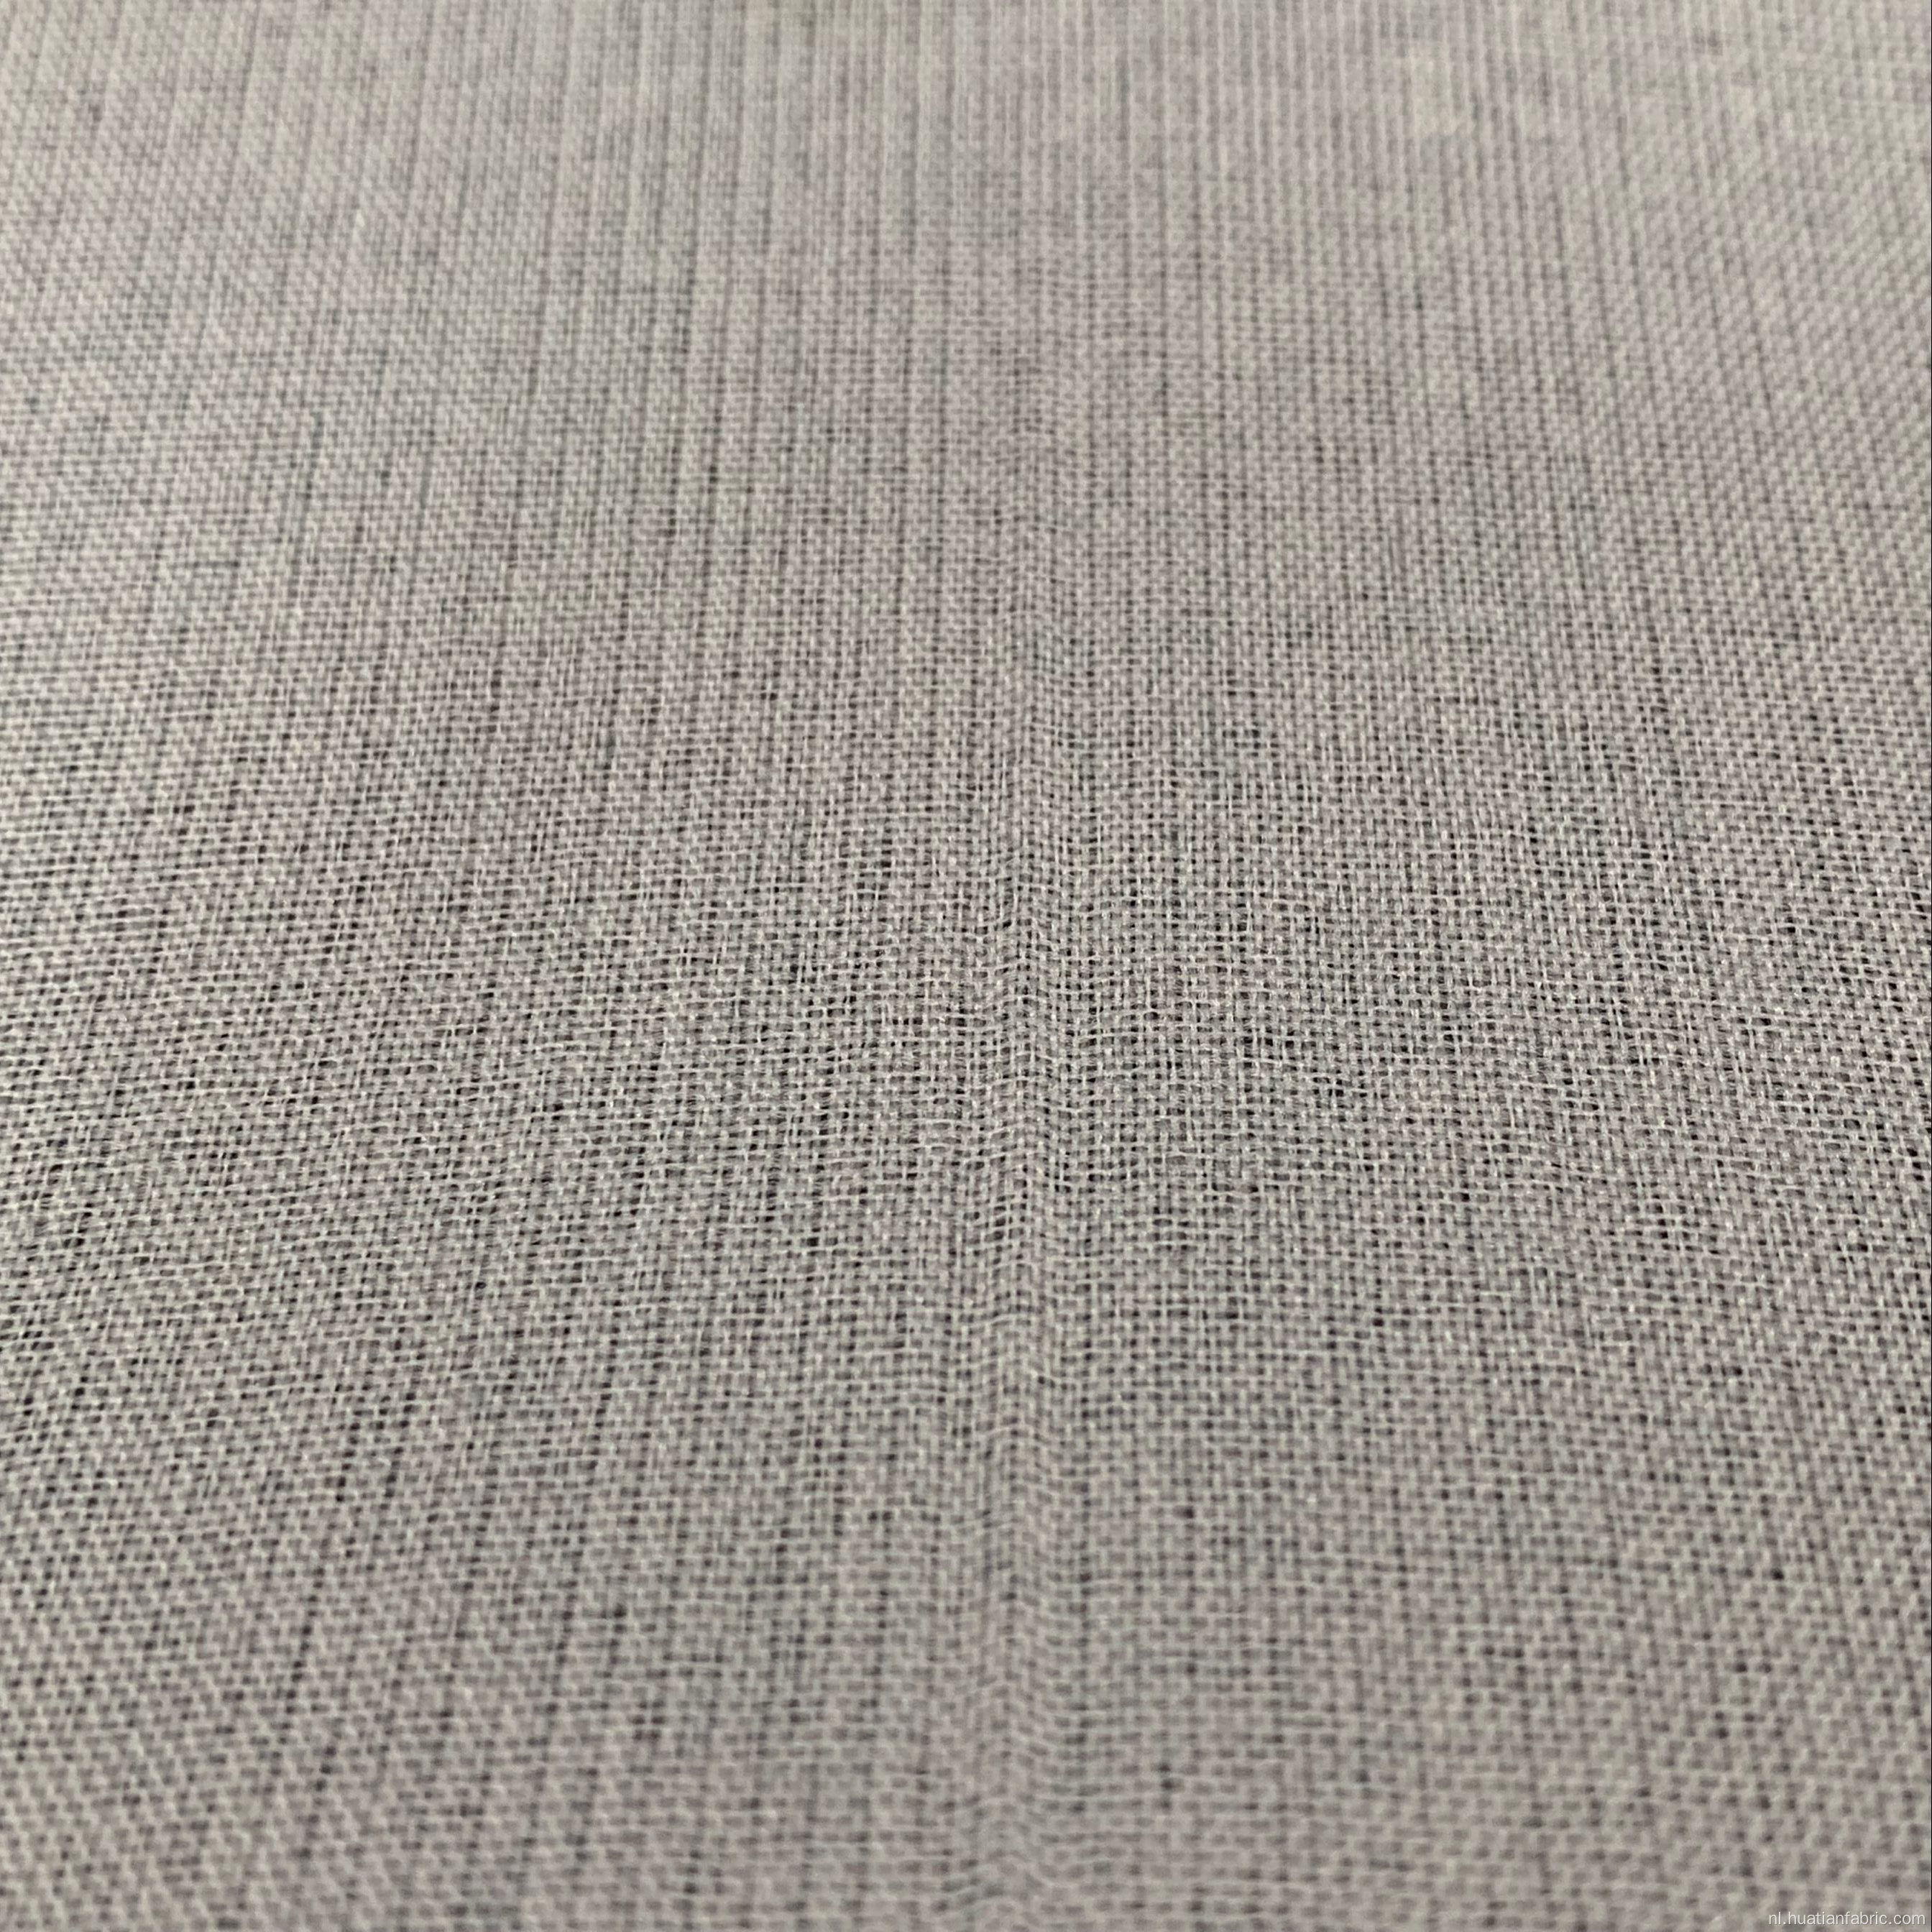 Nieuwe stijl polyester linnen stof met pongee